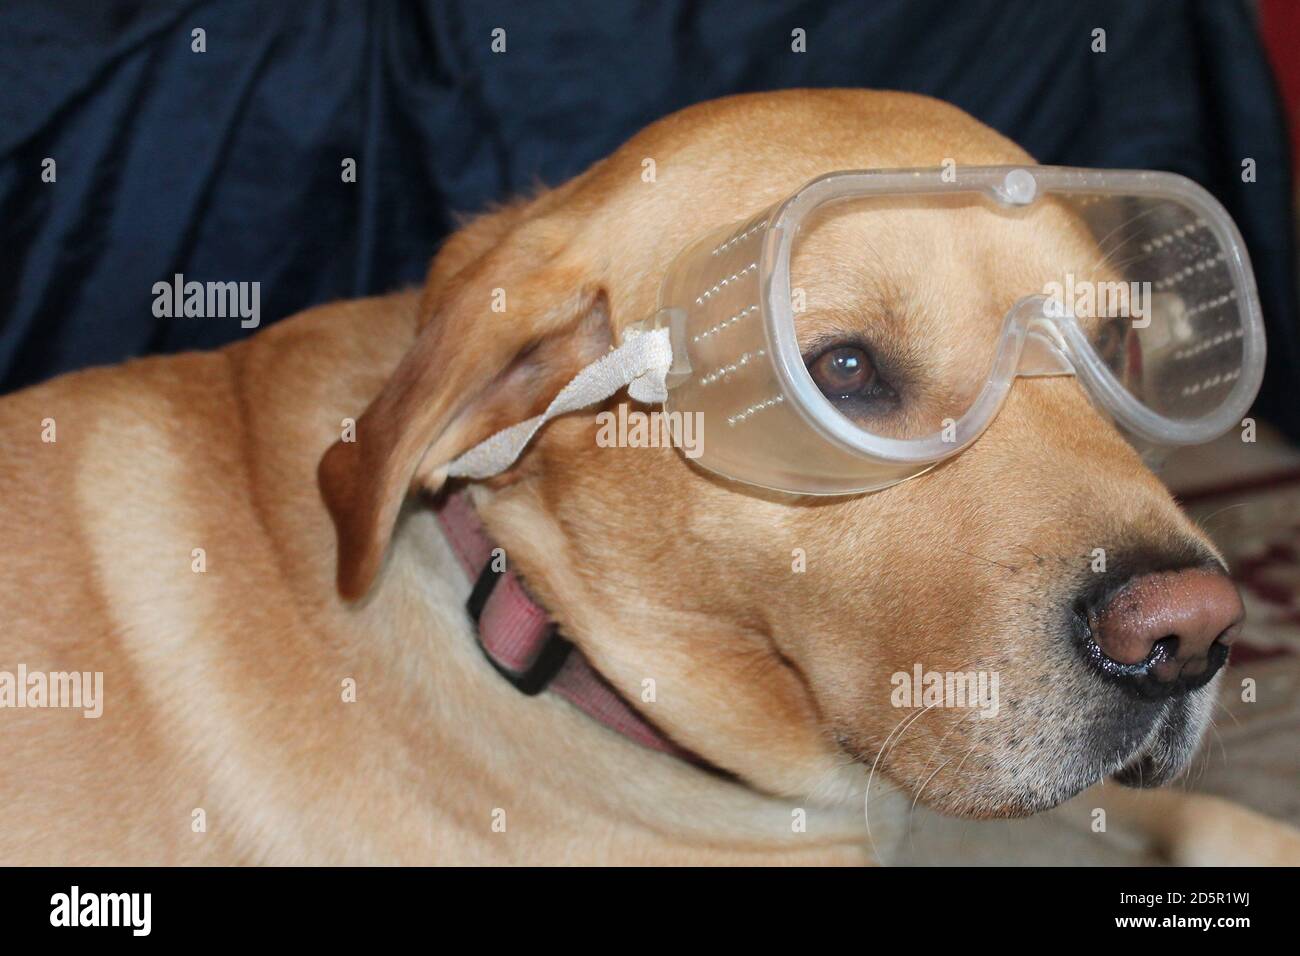 Perro con gafas de seguridad para proteger los ojos contra las alergias Foto de stock